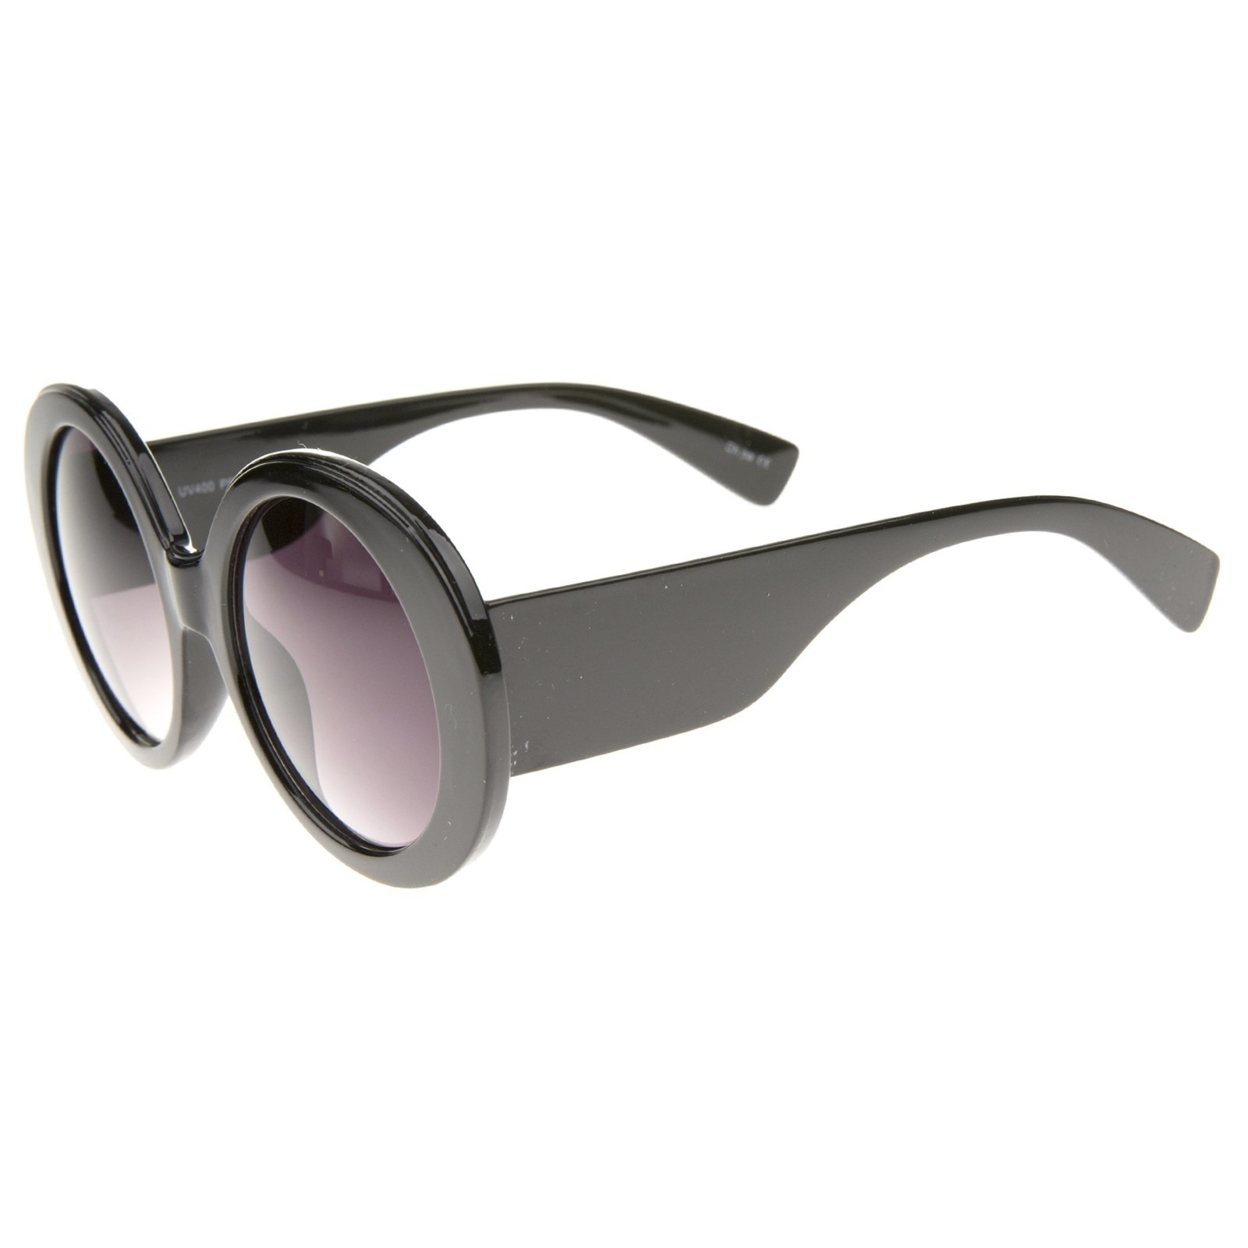 High Fashion Glam Chunky Round Oversize Sunglasses 50mm - Orange-Tortoise / Amber